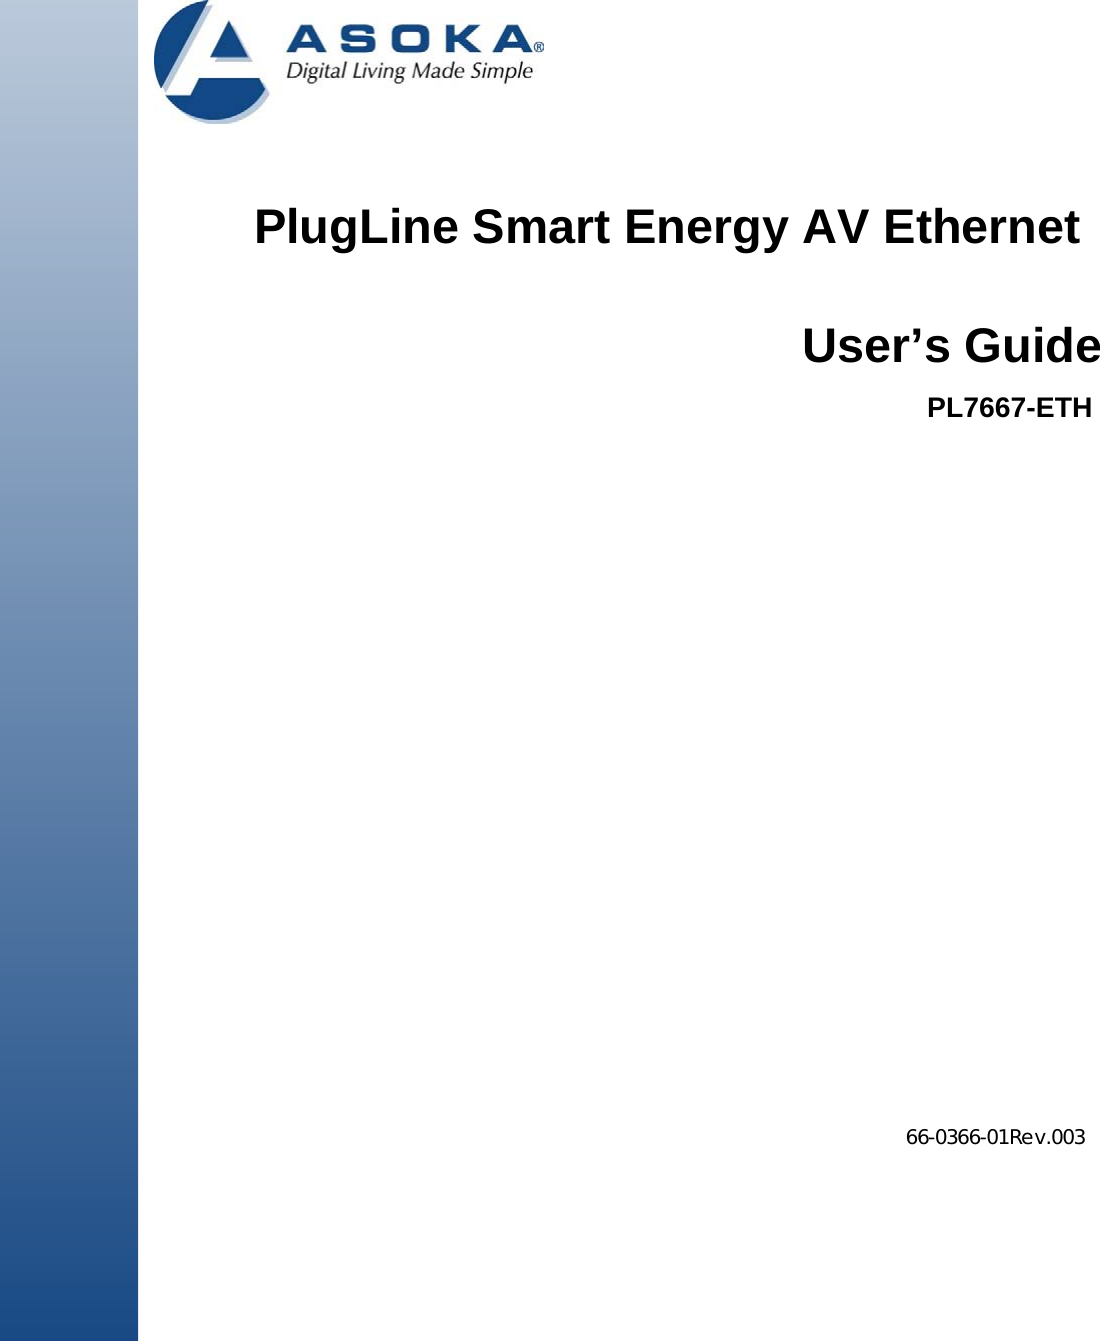                   PlugLine Smart Energy AV Ethernet                                   66-0366-01Rev.003                        User’s GuidePL7667-ETH